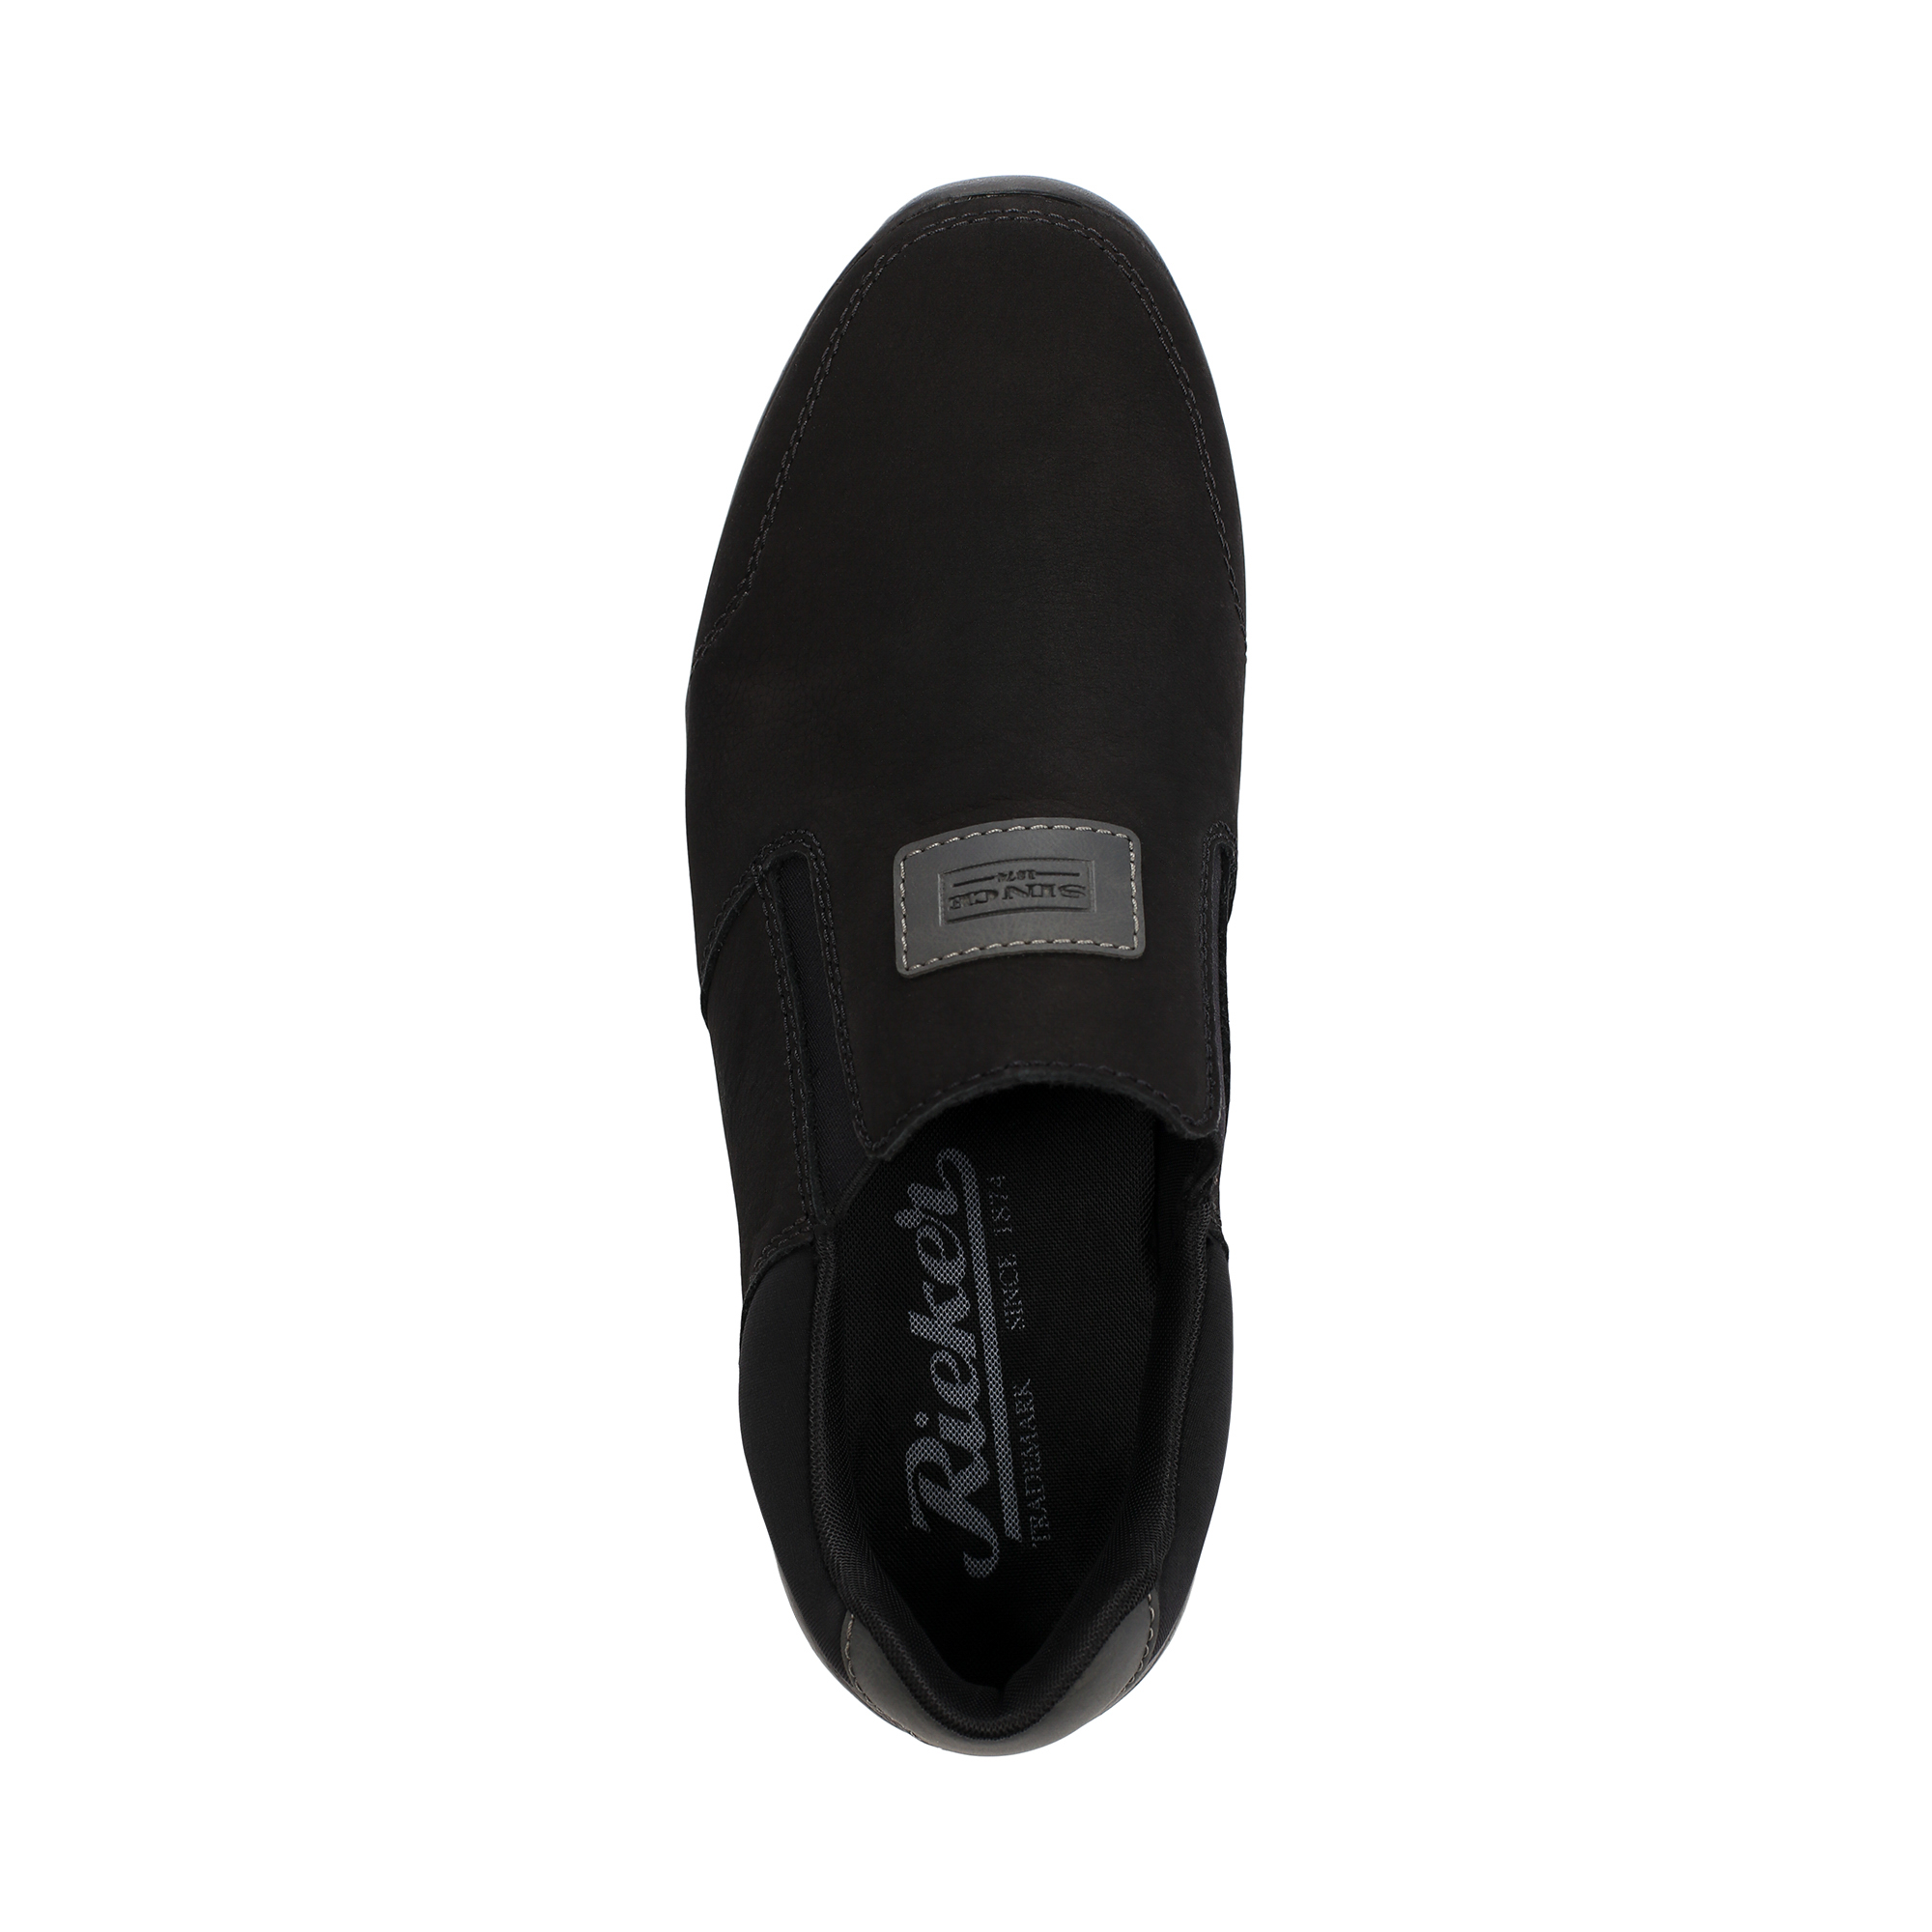 Туфли/полуботинки Rieker 16456-00, цвет черный, размер 44 - фото 5